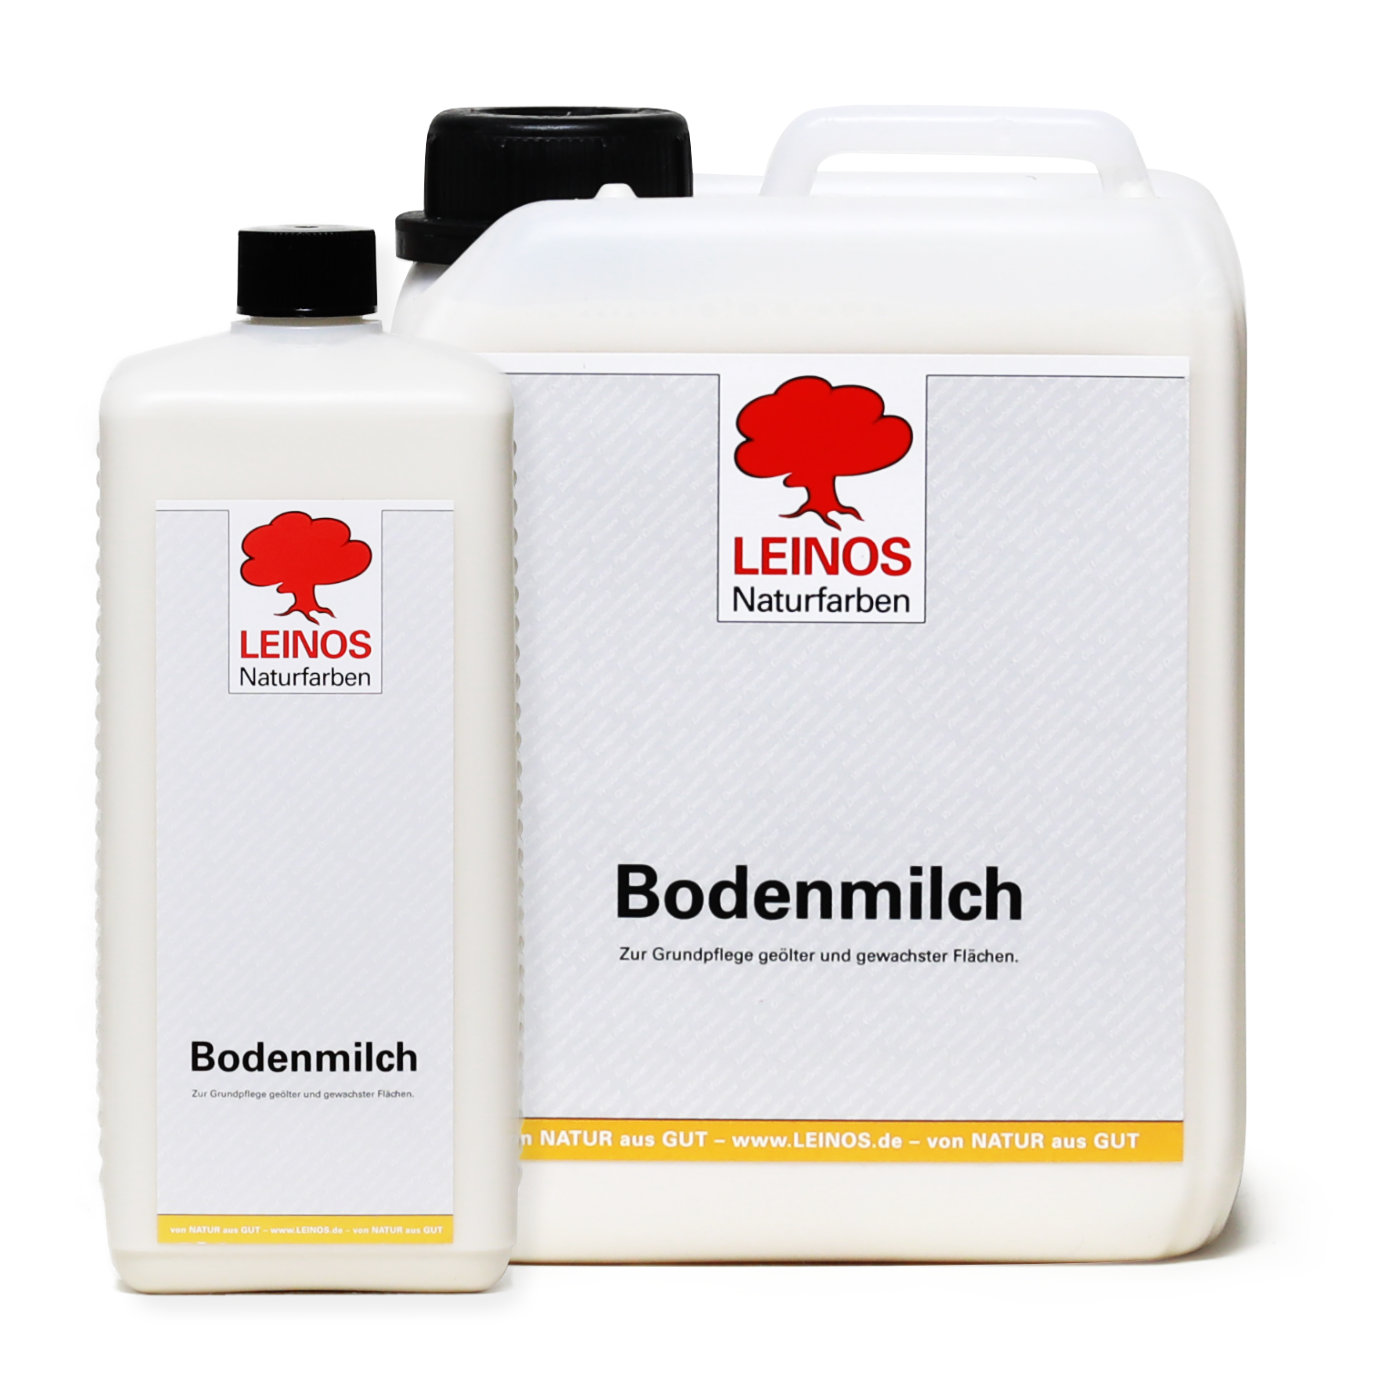 LEINOS Bodenmilch 920